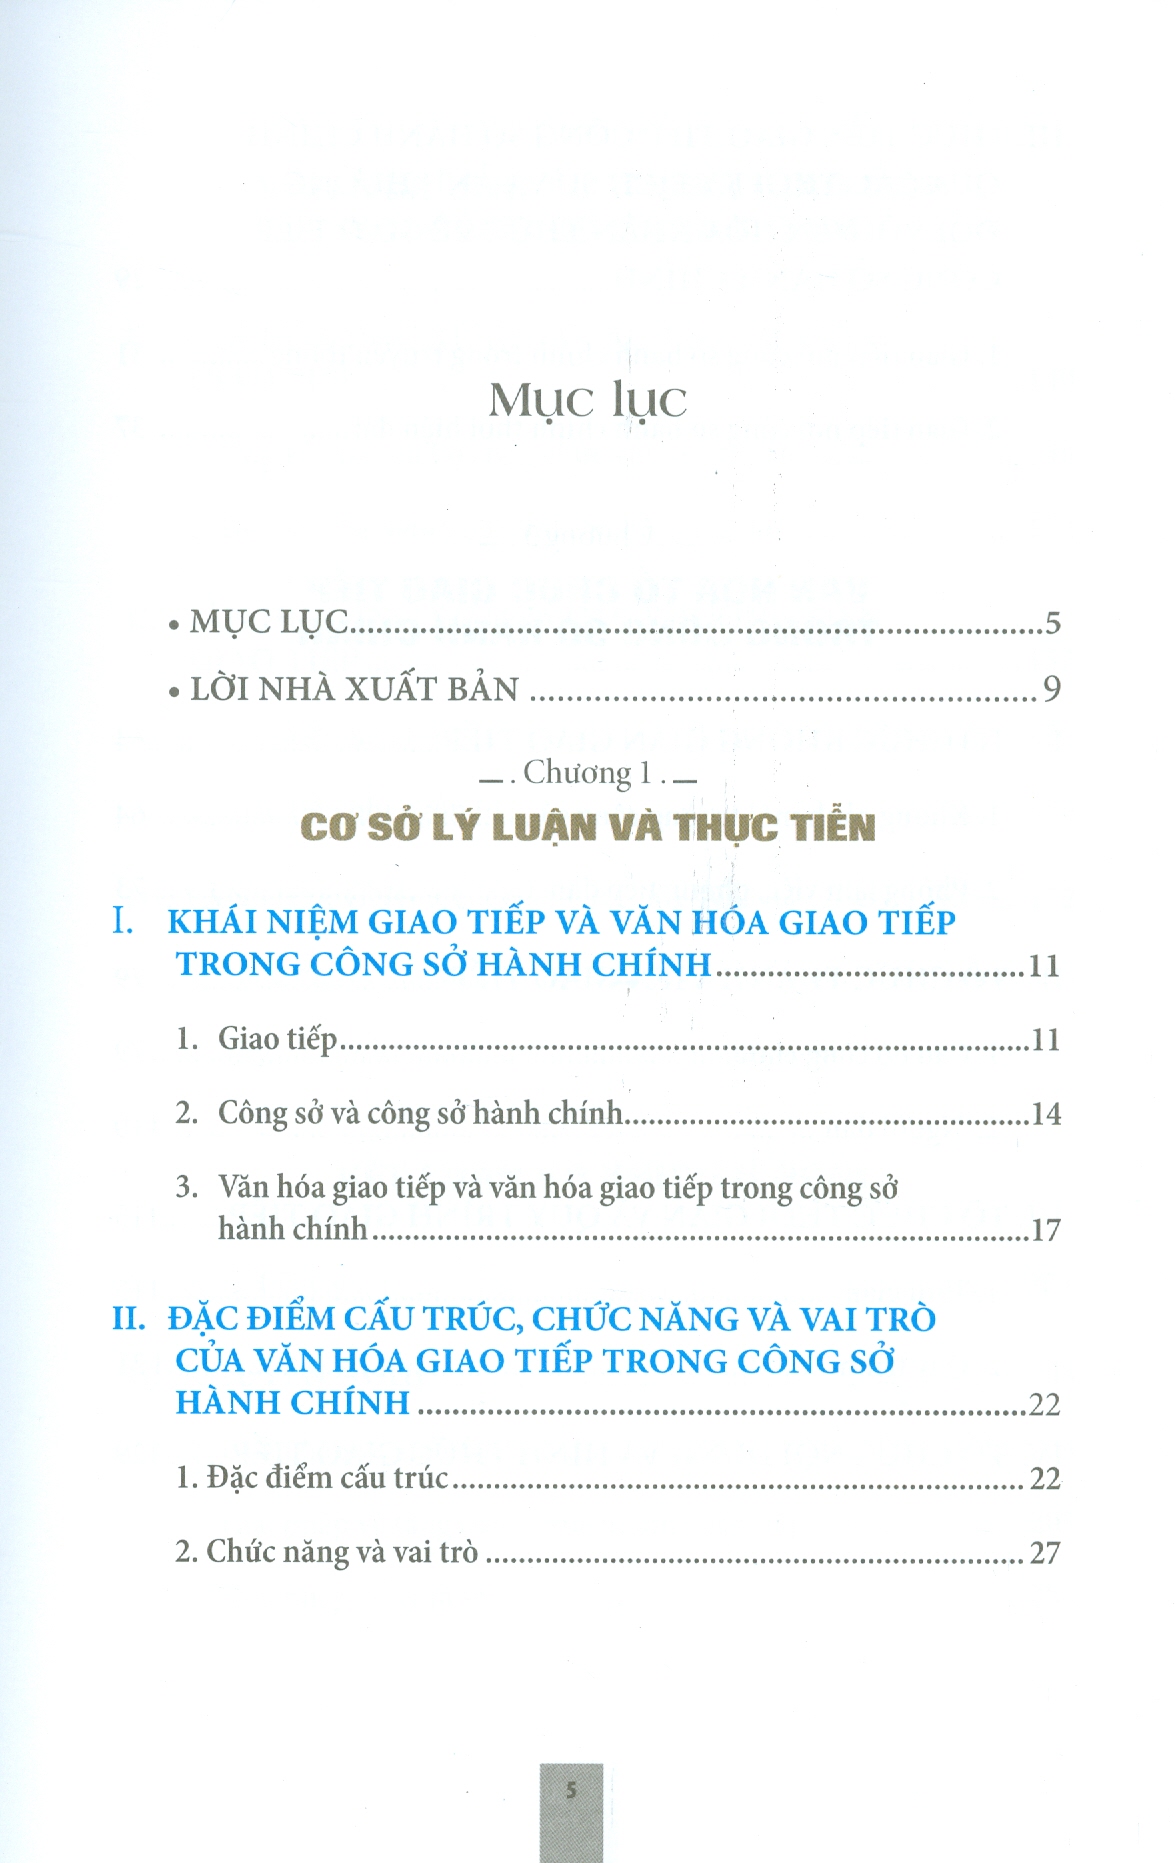 Văn Hóa Giao Tiếp Trong Công Sở Hành Chính Trong Trường Hợp Thành Phố Hồ Chí Minh Từ Năm 1986 Đến Nay